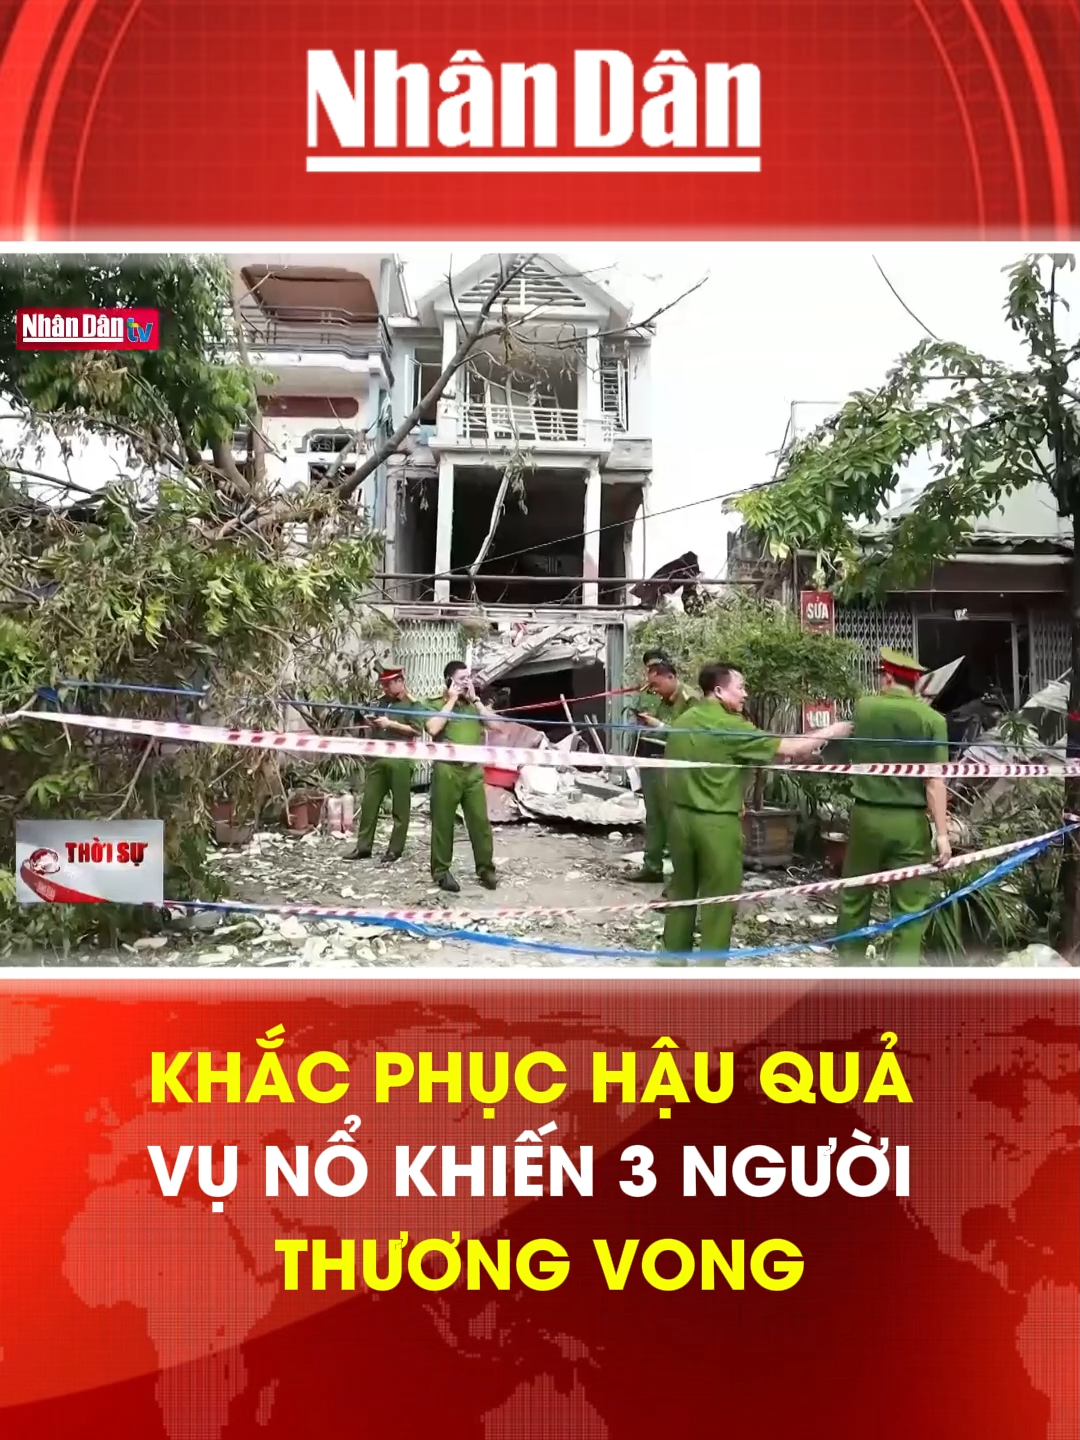 Khắc phục hậu quả vụ nổ khiến 3 người thương vong #baonhandan #tiktoknews #tintuc24h #mcv #socialnews #khacphuc #hauqua #vuno #thuongvong